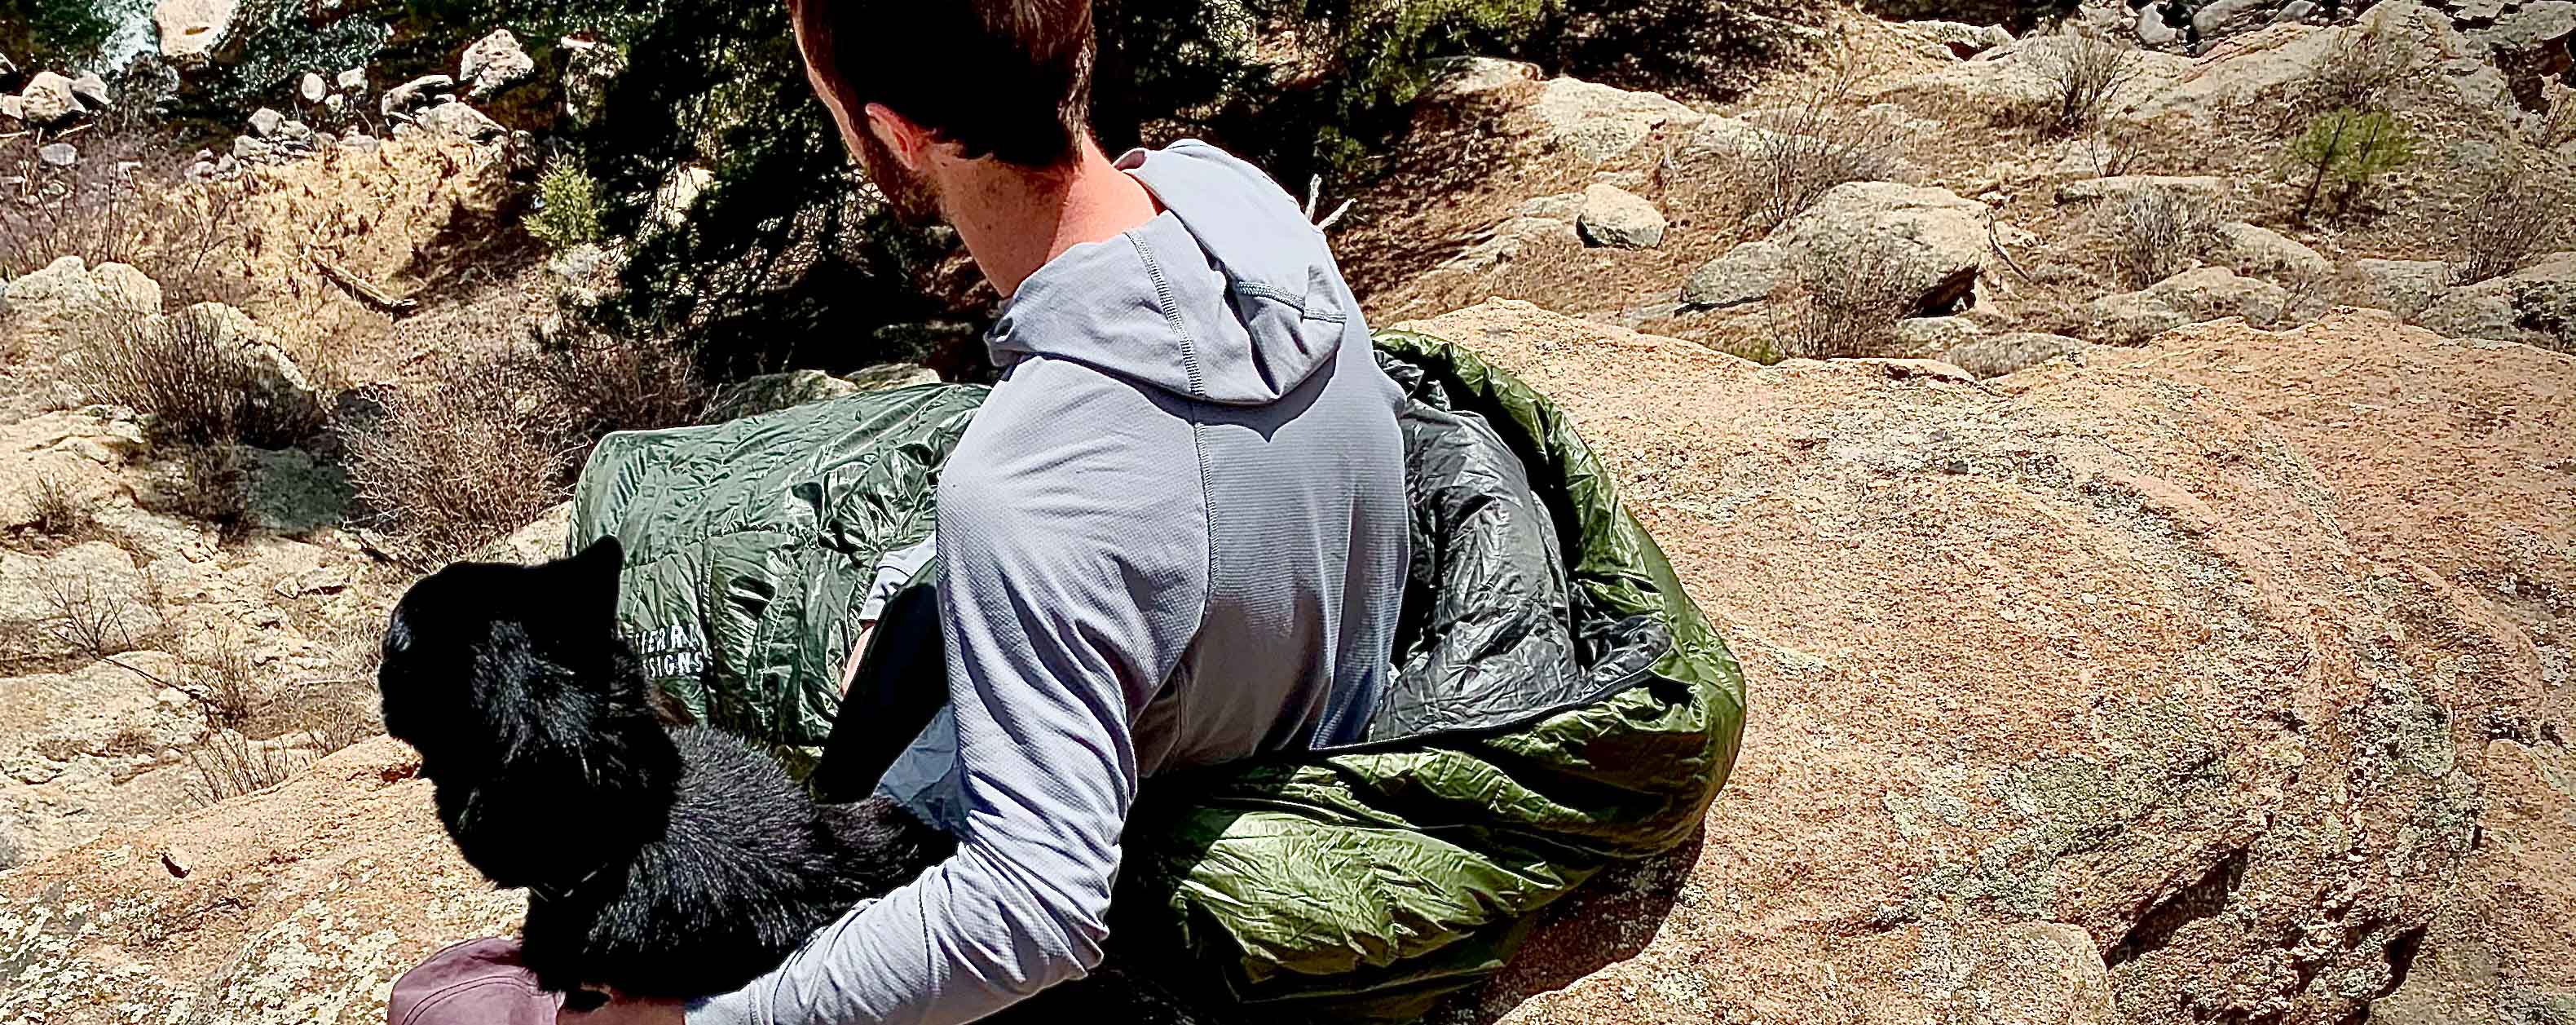 Sierra-designs-get-down-sleeping-bag-review-dirtbagdreams.com